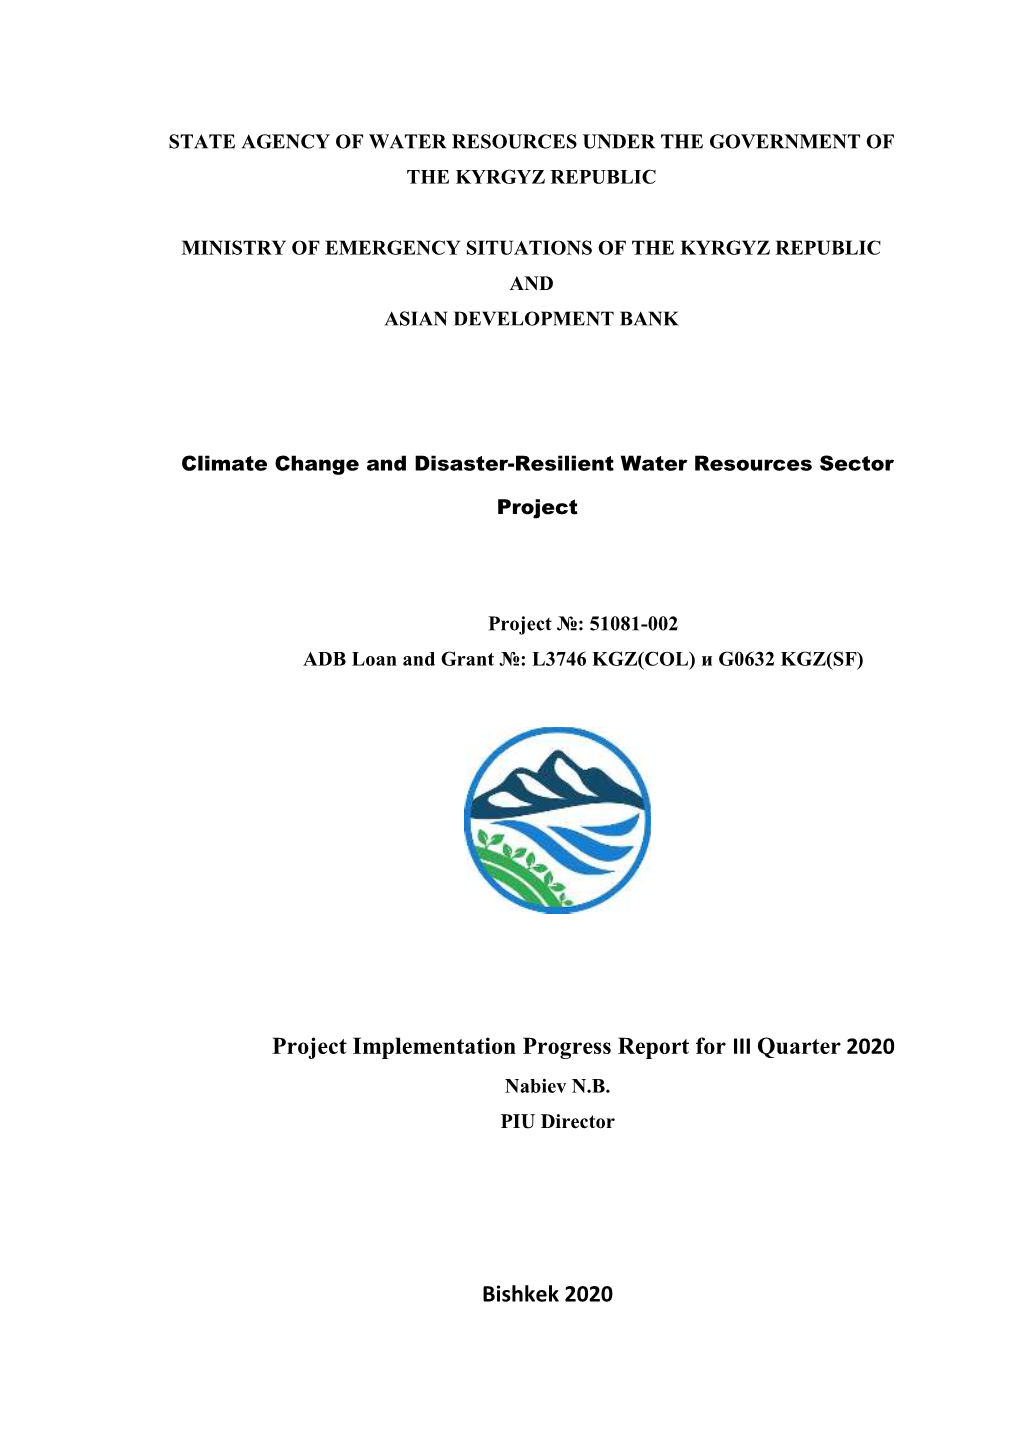 Project Implementation Progress Report for III Quarter 2020 Bishkek